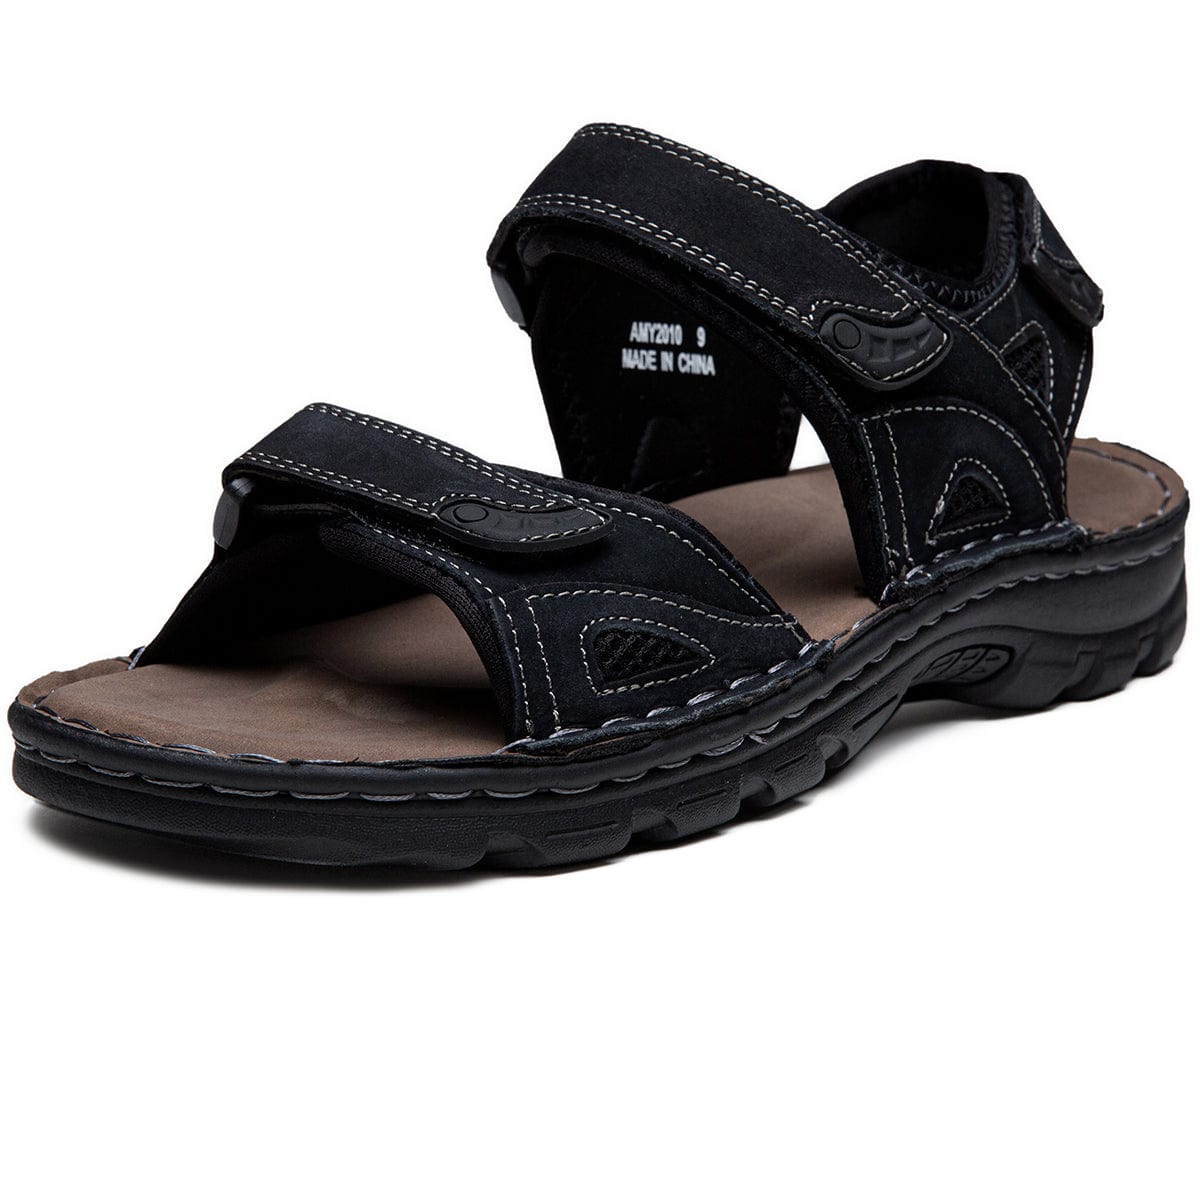 Men's Leather Outdoor Sandals | JOUSEN – JOUSEN SHOES